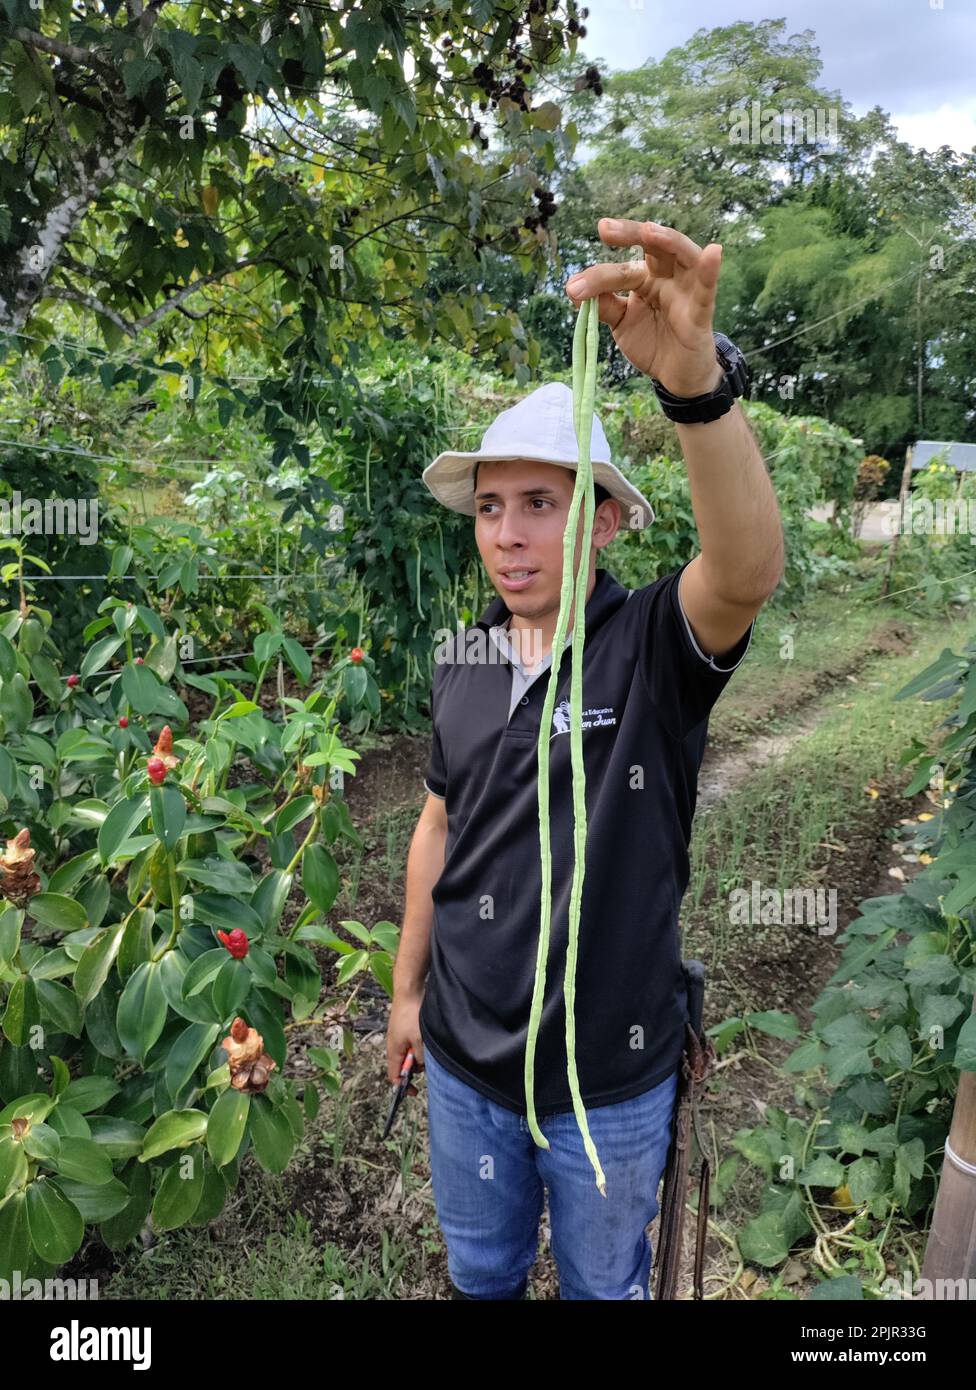 La Fortuna, Costa Rica - Una guida alla Finca educativa Don Juan (Don Juan Educational Farm) spiega le colture che la fattoria biologica cresce. Raccolti coltivati o Foto Stock